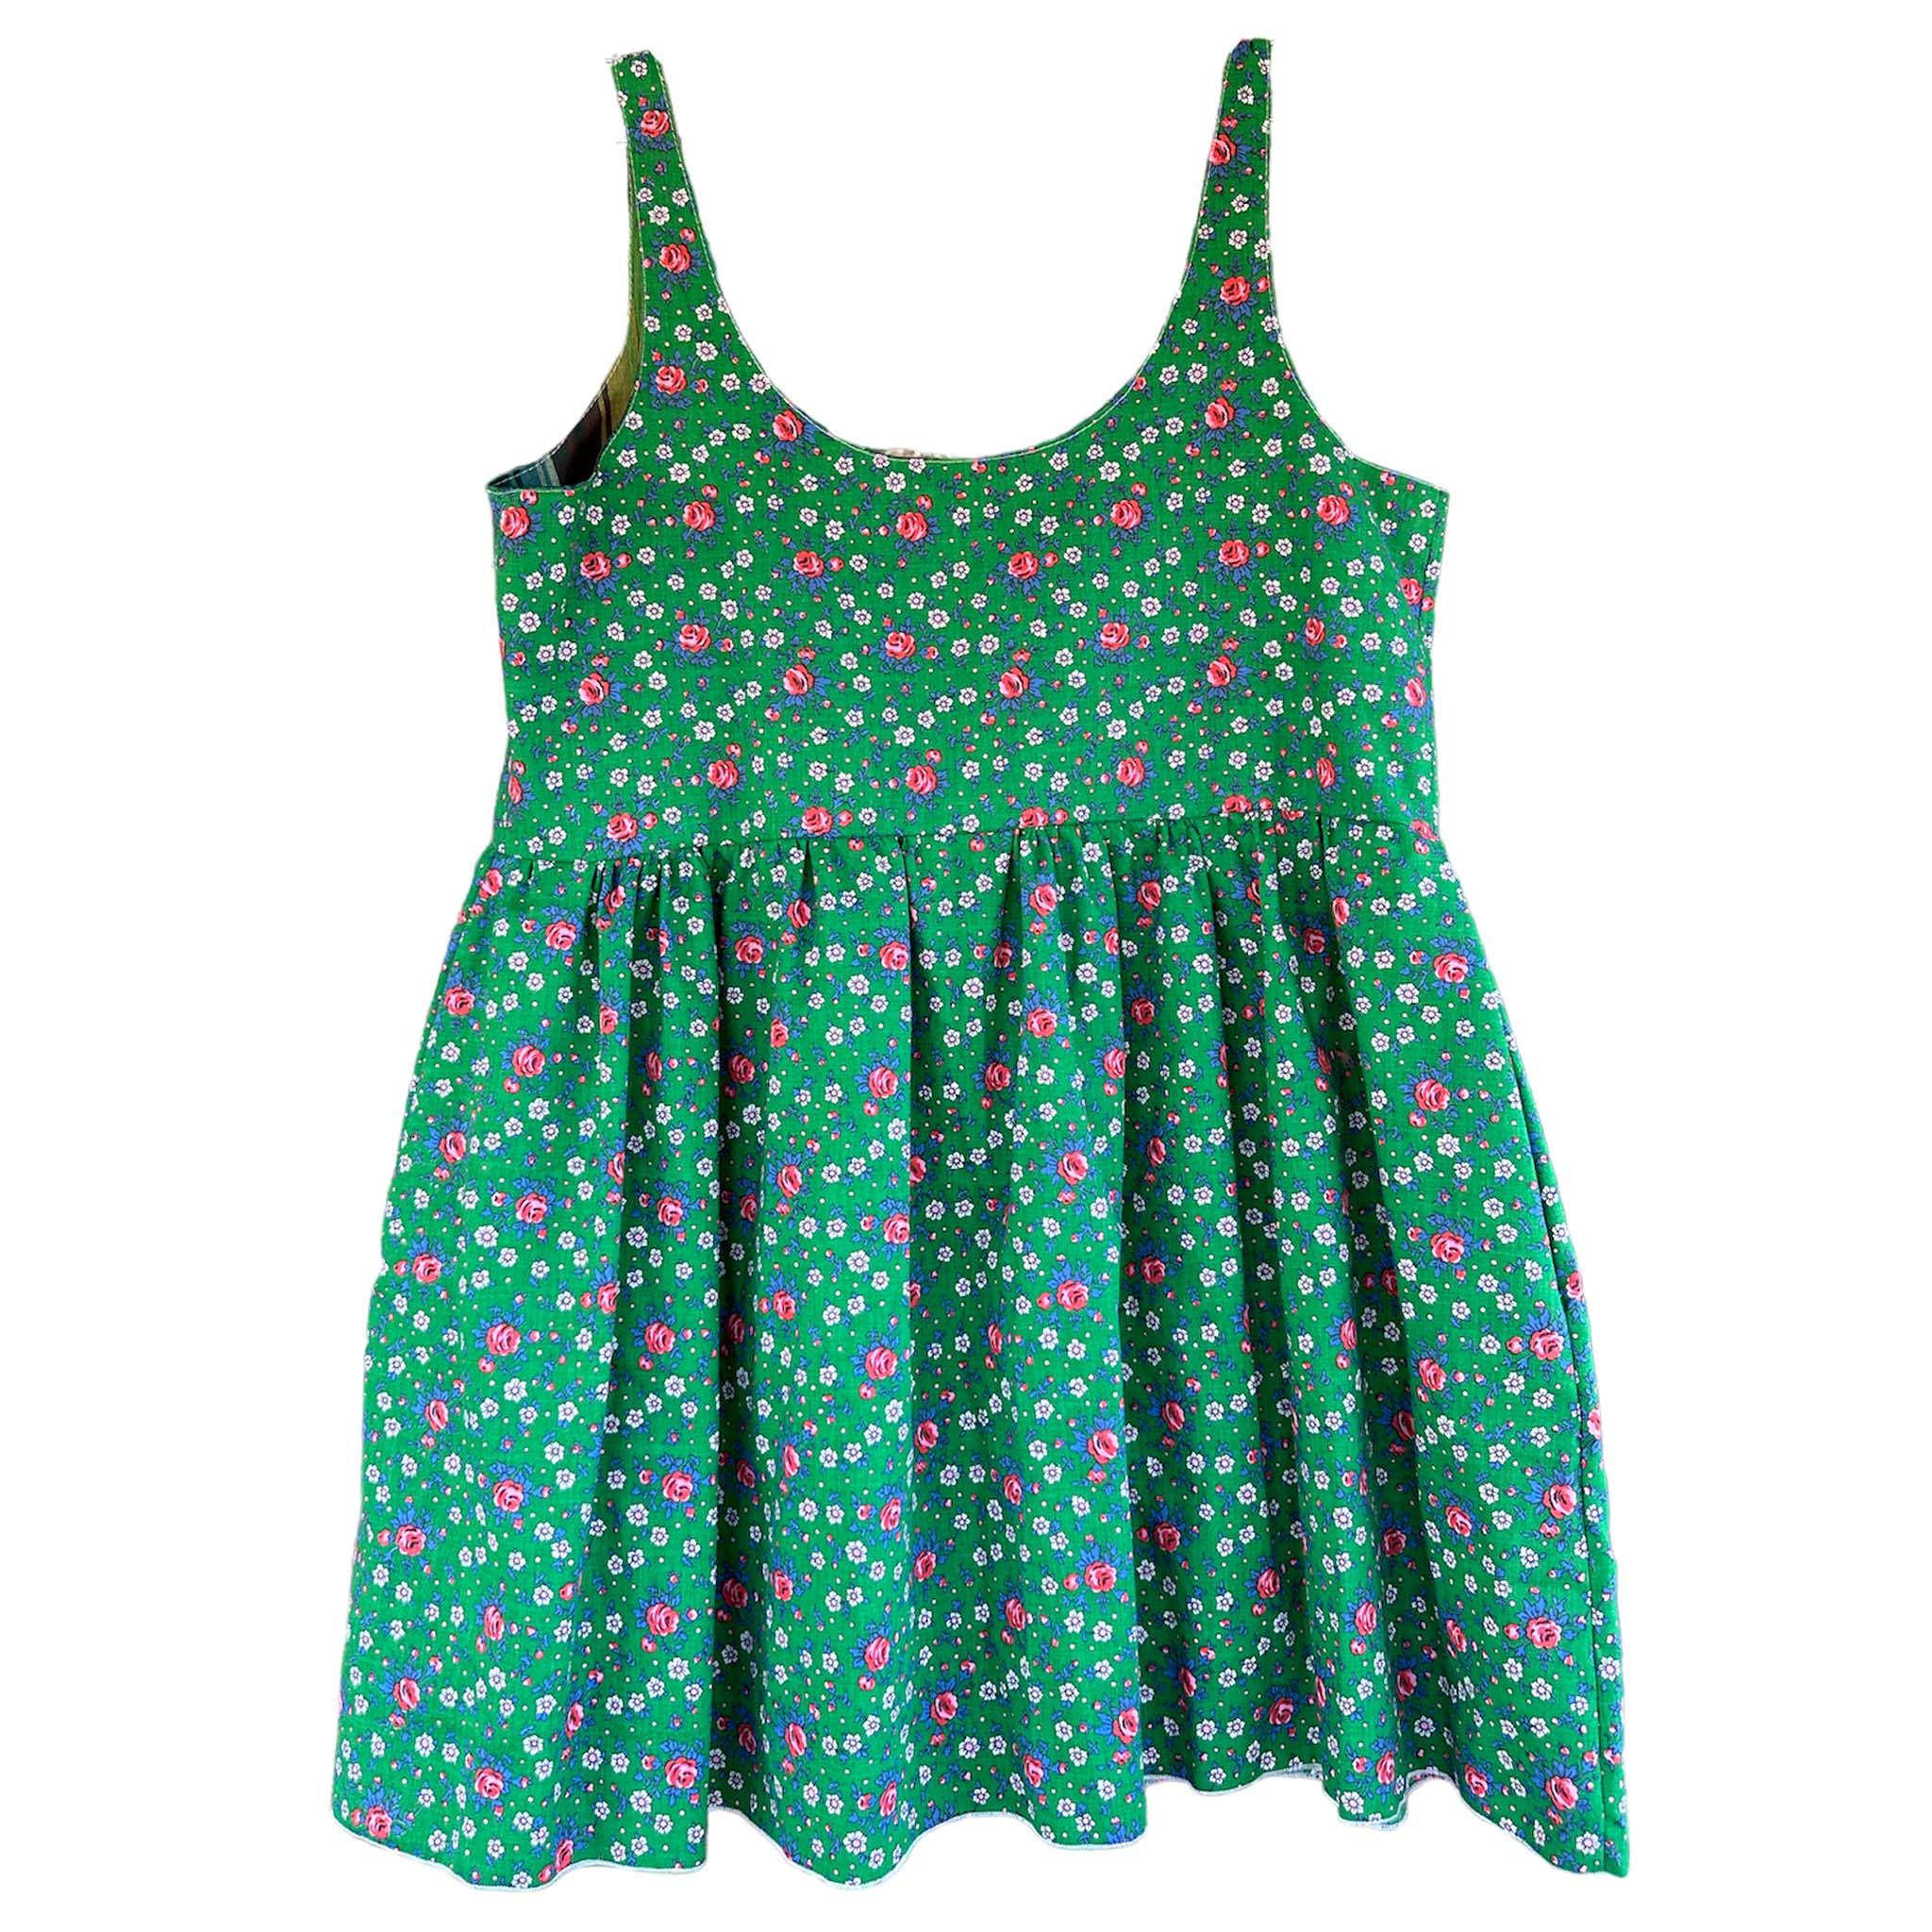 Terri Mini Dress (green floral)